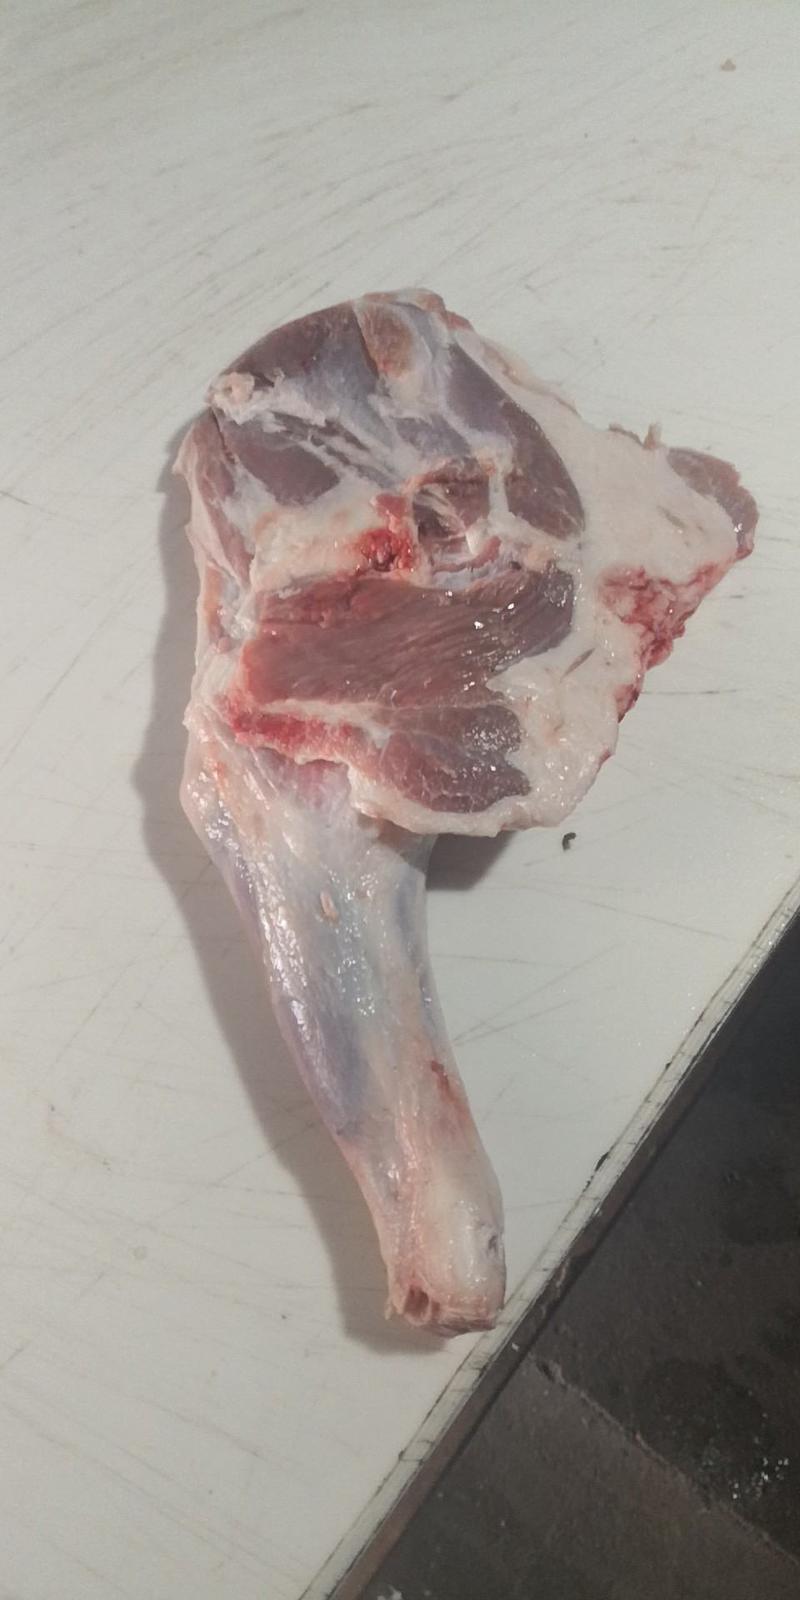 新鲜羊腿山西羊肉羔羊绵羊羊腿肉冷冻烧烤食材